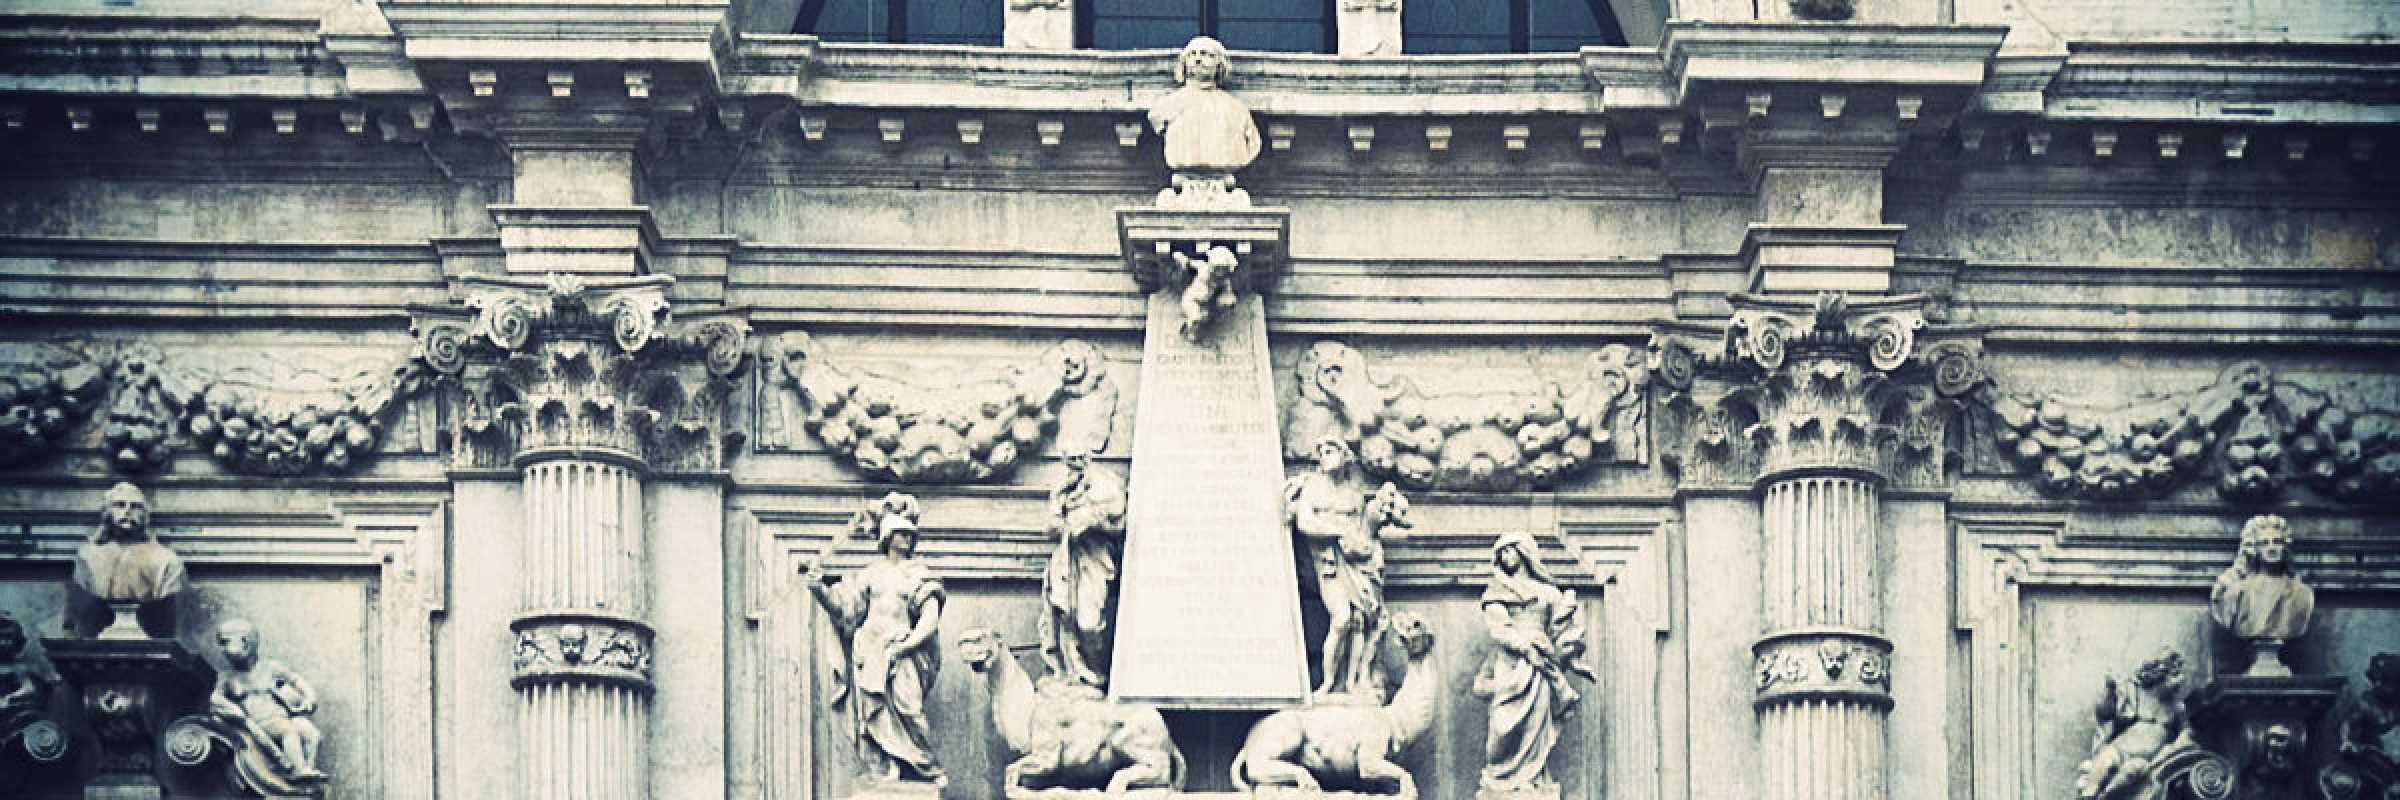 Il busto del patrizio Vincenzo Fini, posizionato nella parte centrale della facciata, in cima ad un obelisco sorretto da cammelli.